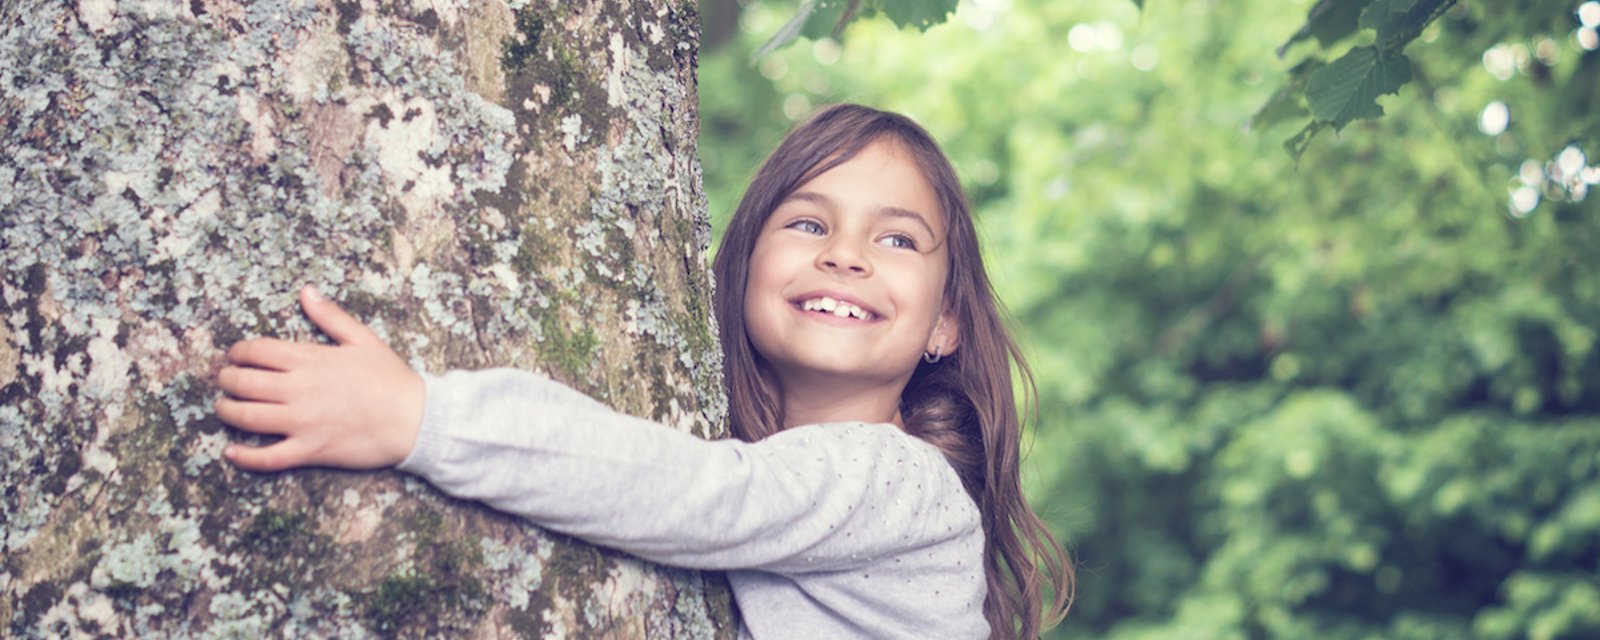 Selon les scientifiques, les enfants qui sont en contact avec la nature se comporteraient mieux